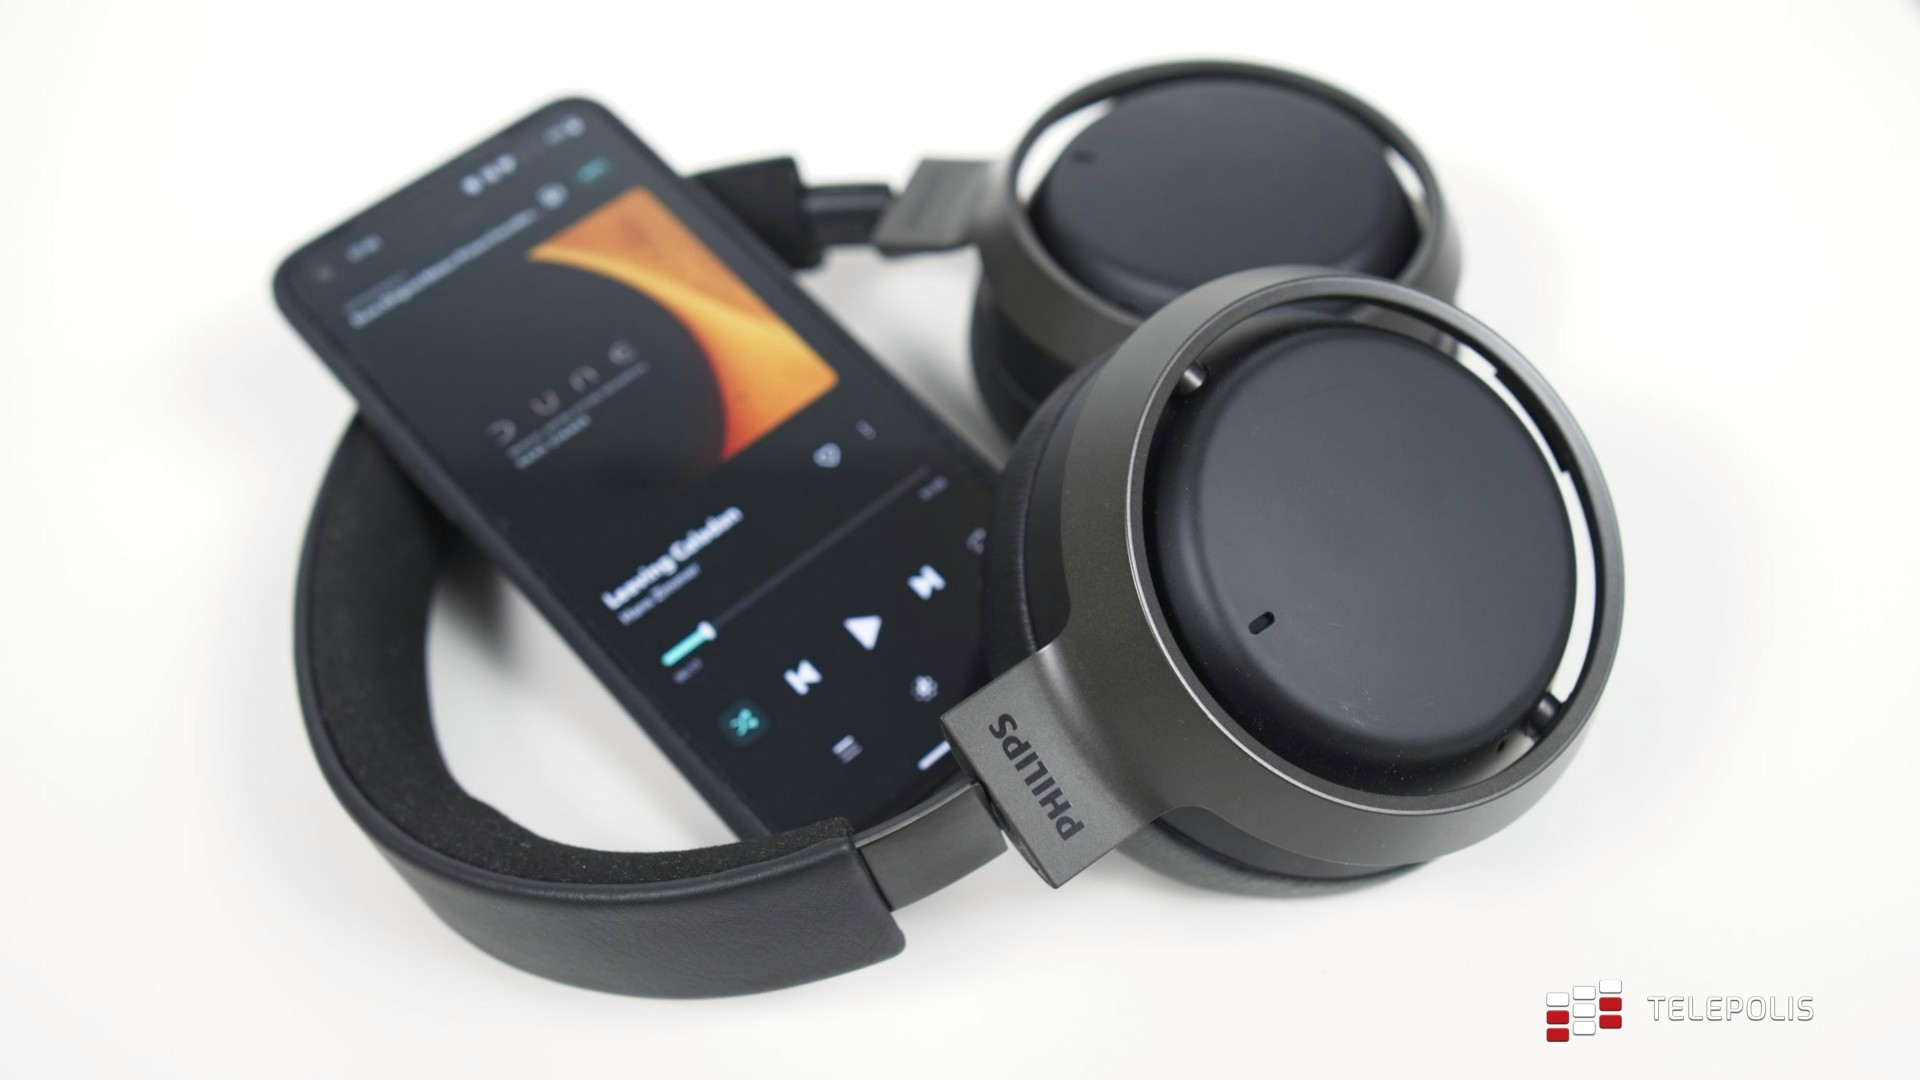 Philips Fidelio L3 | szybki test słuchawek dla wymagających